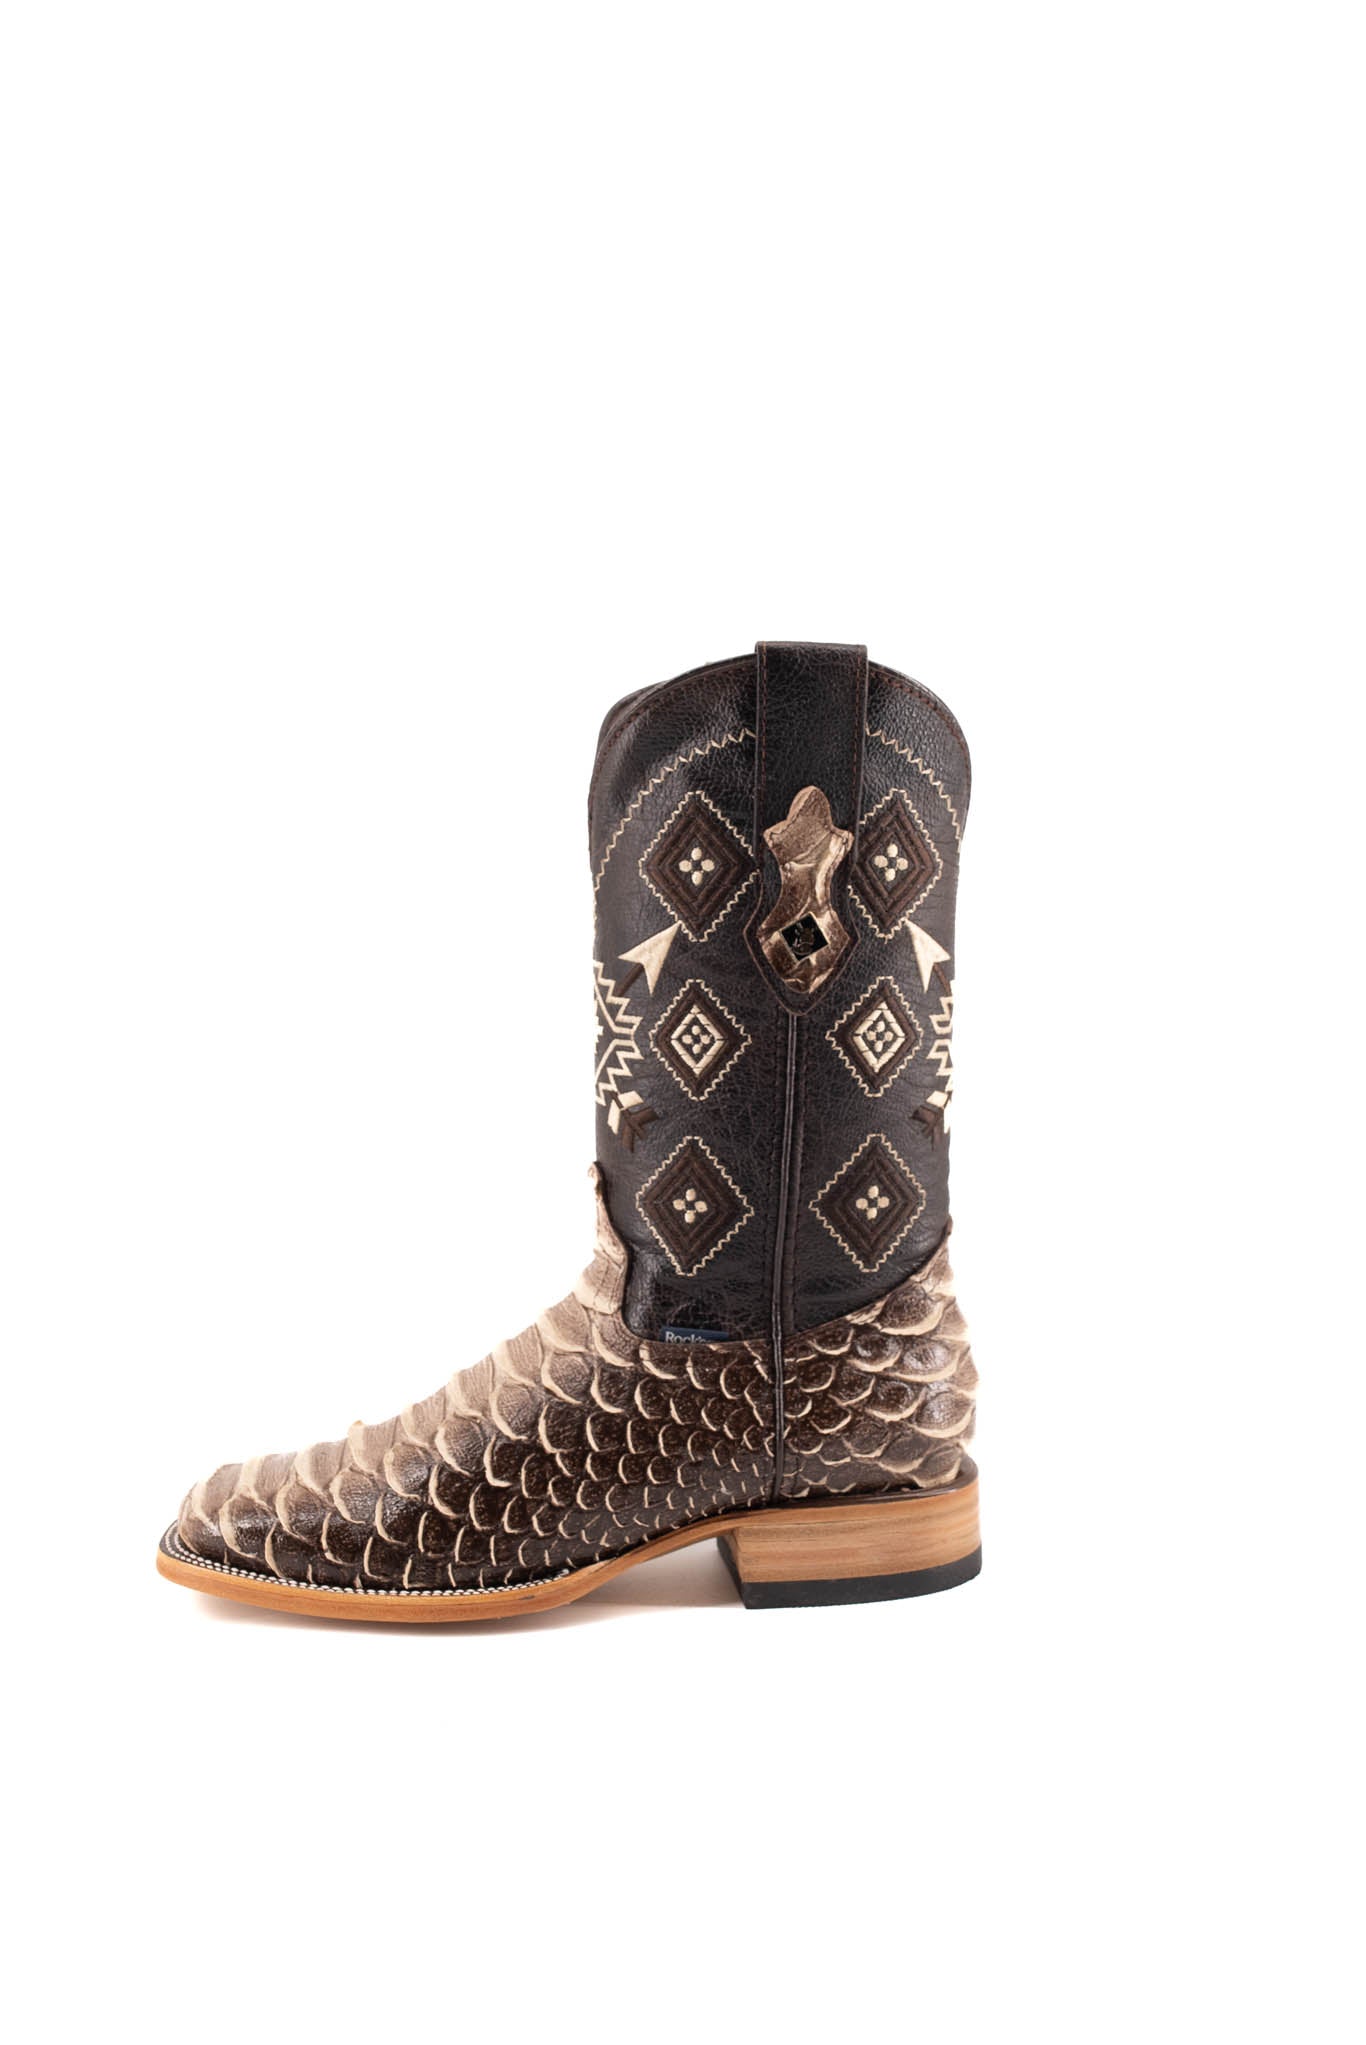 Men's Piton Mega Sombreado Square Toe Cowboy Boots